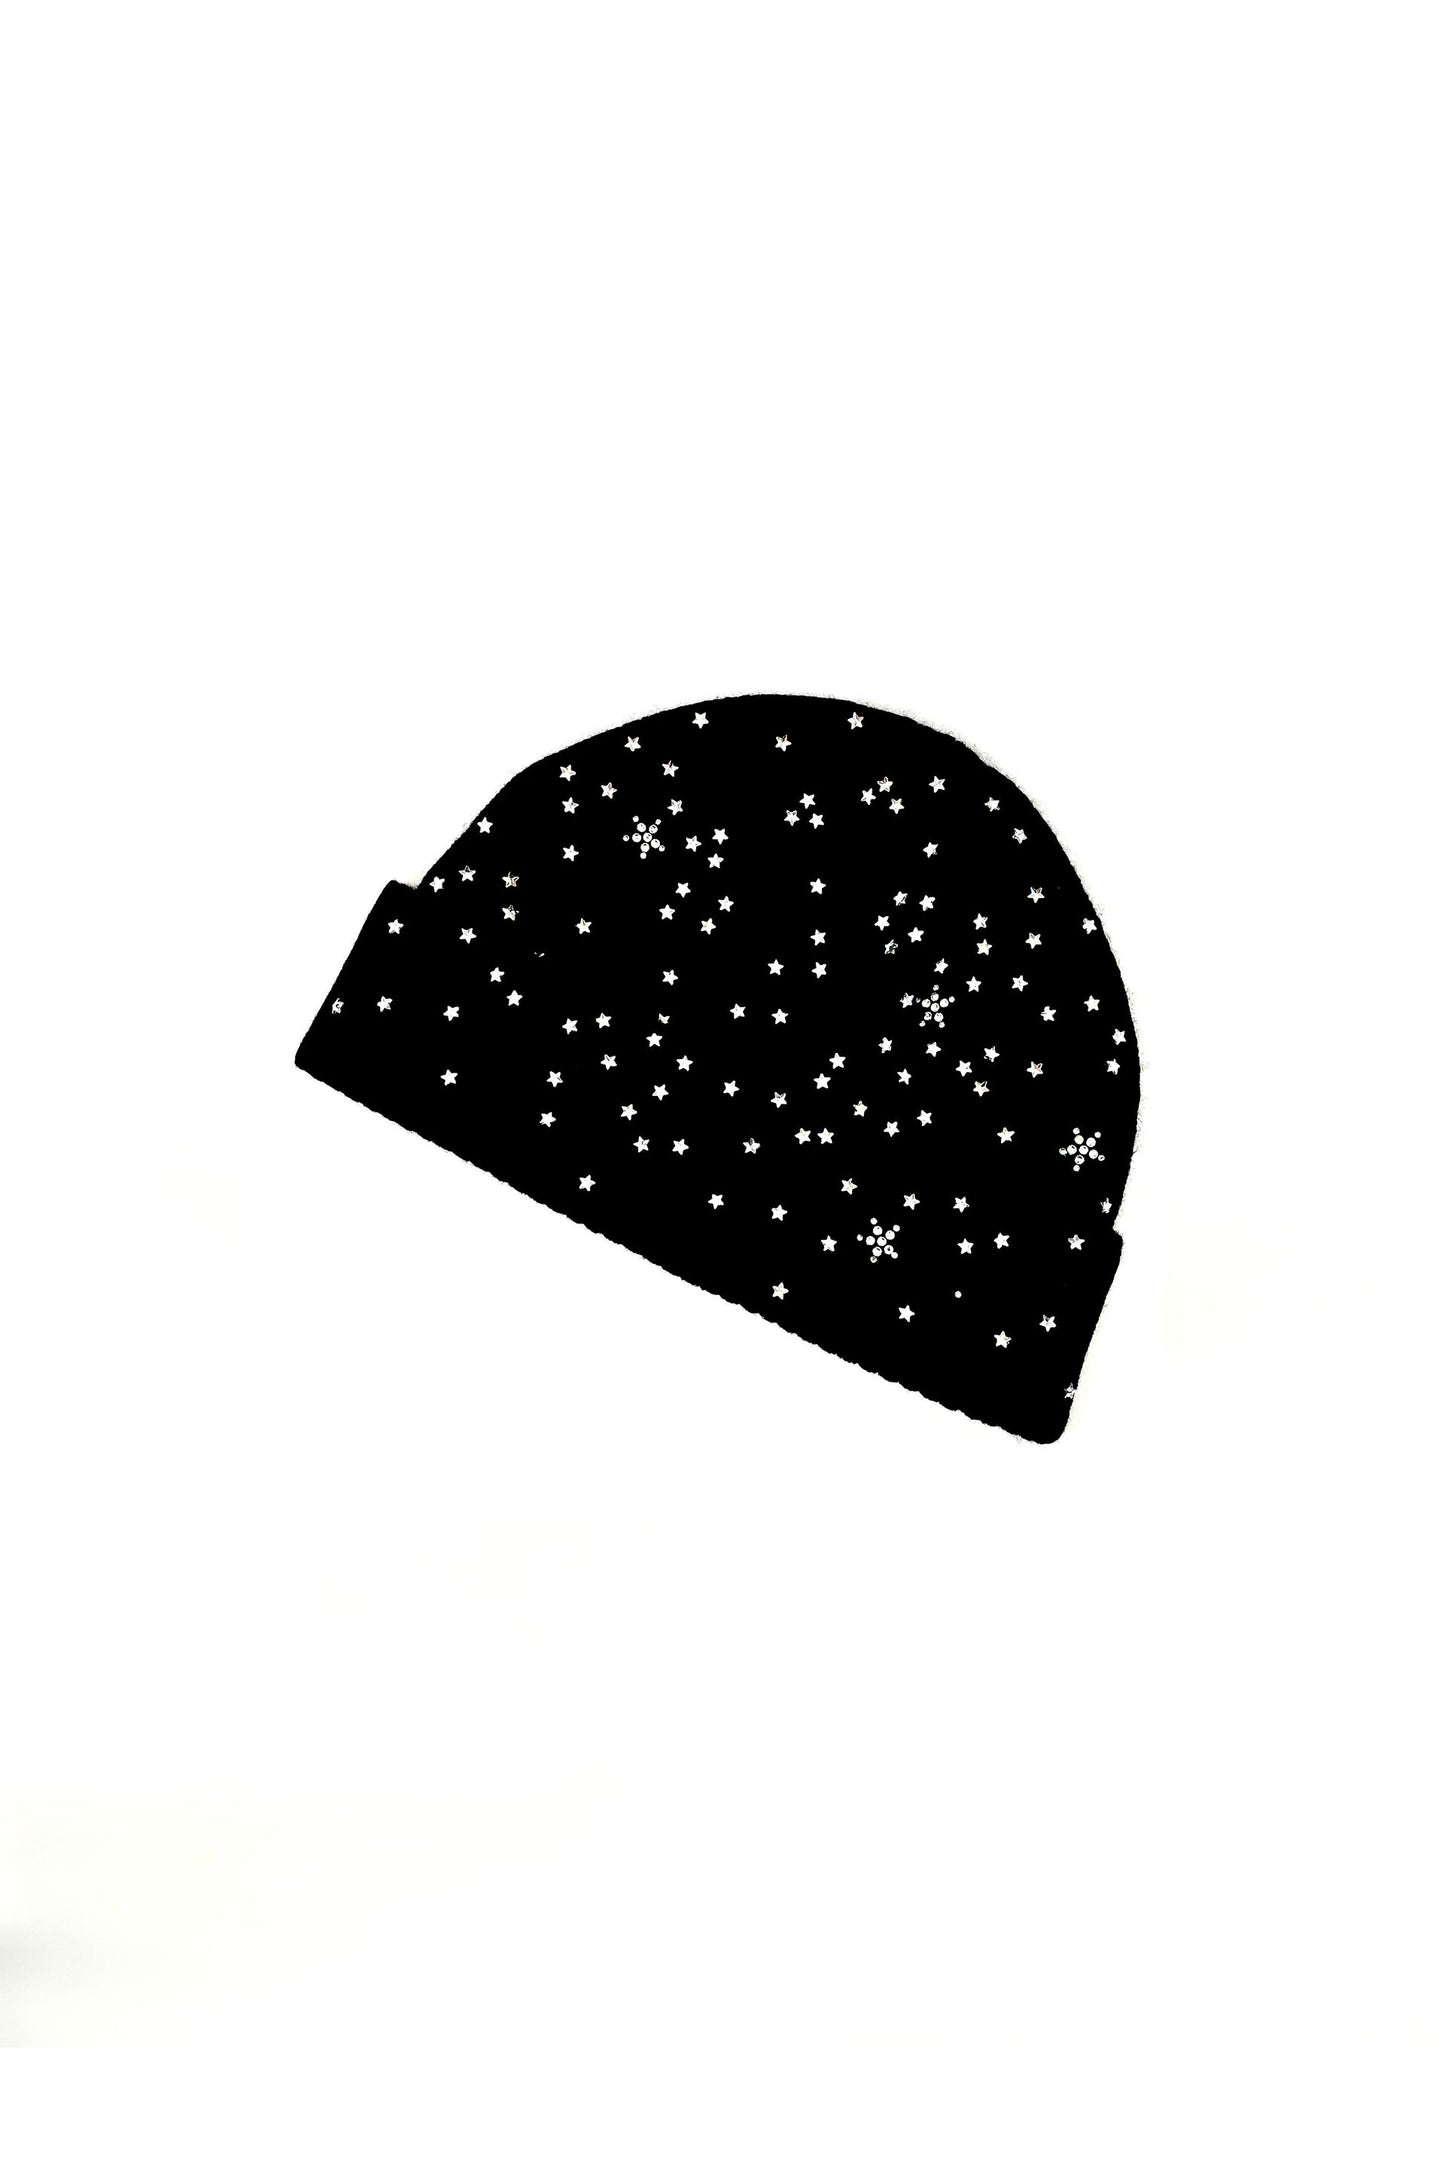 'LONGFELLOW'S LIGHT OF STARS' BEANIE - HATS - Libertine